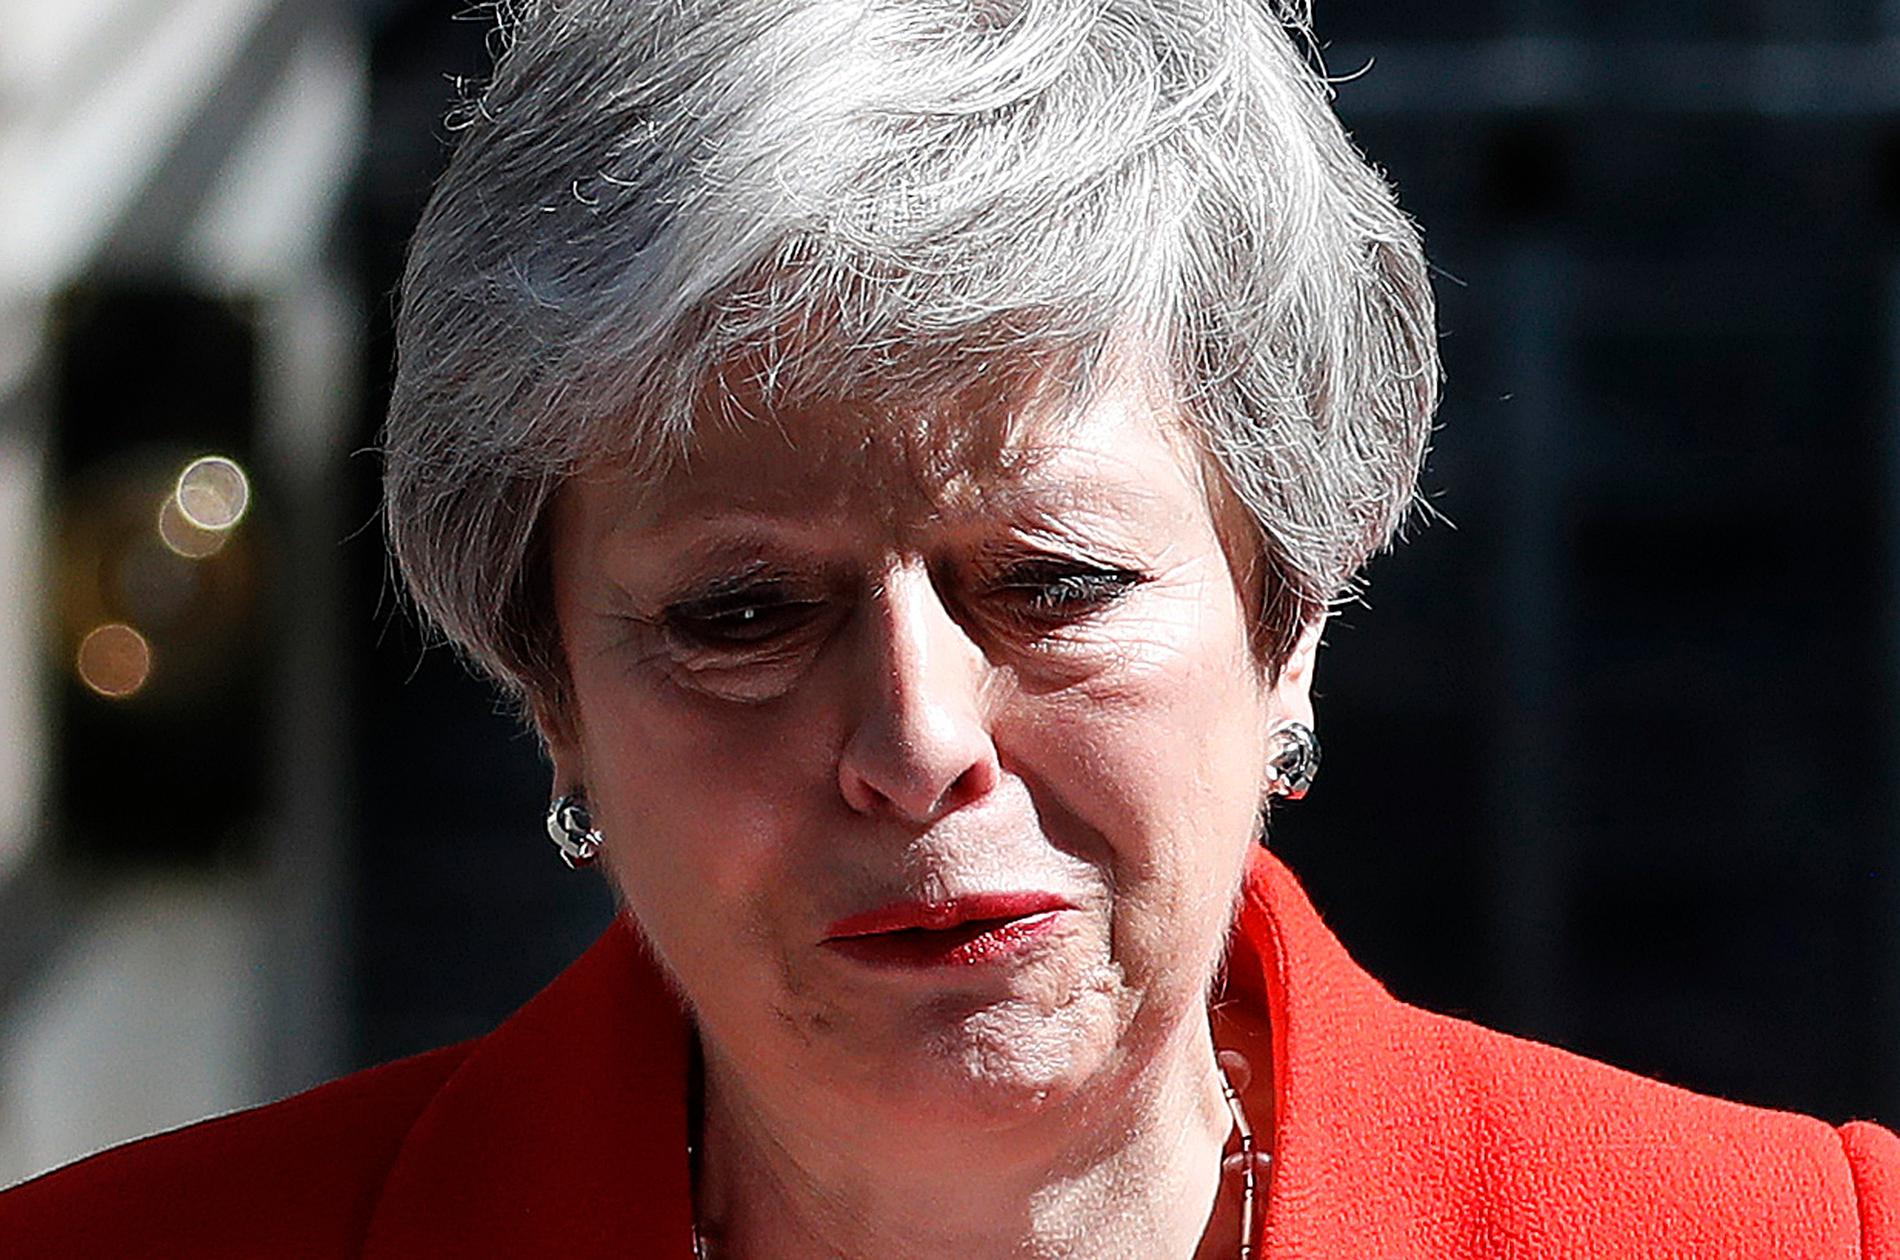 Storbritanniens avgående premiärminister Theresa May kommer att bli ihågkommen för sina misstag, enligt en expert.